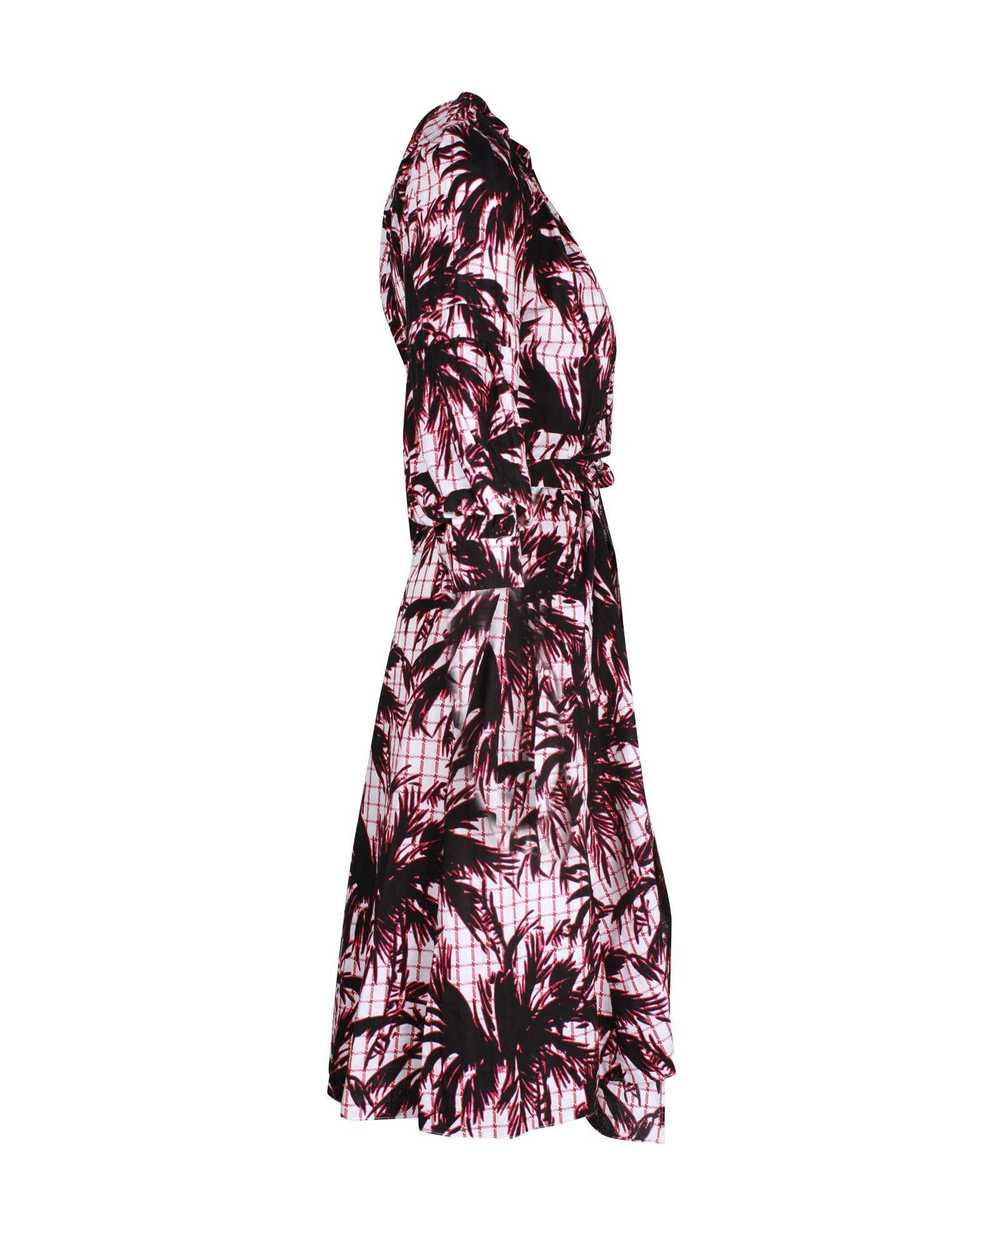 Diane von Furstenberg Print Wrap Dress - image 4